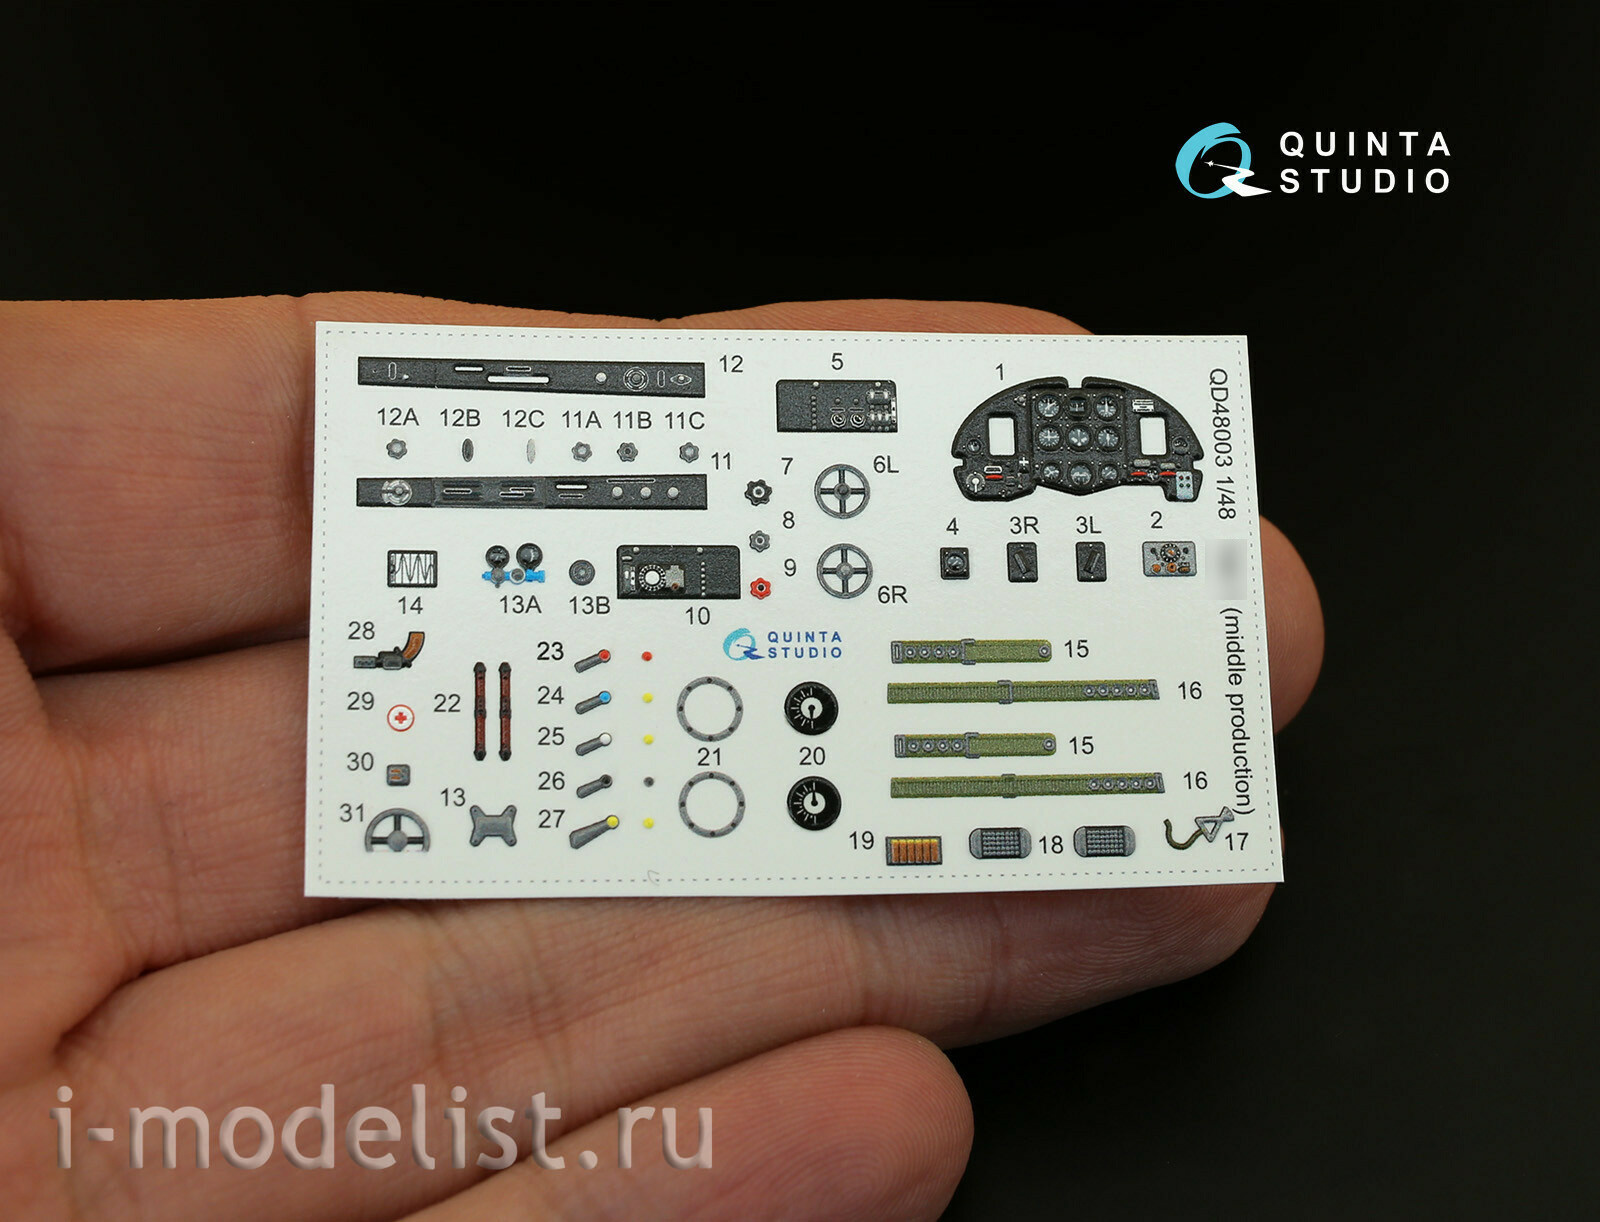 QD48003 Quinta Studio 1/48 3D Декаль интерьера кабины Yakovlev-1 (средние серии) (для любых моделей)